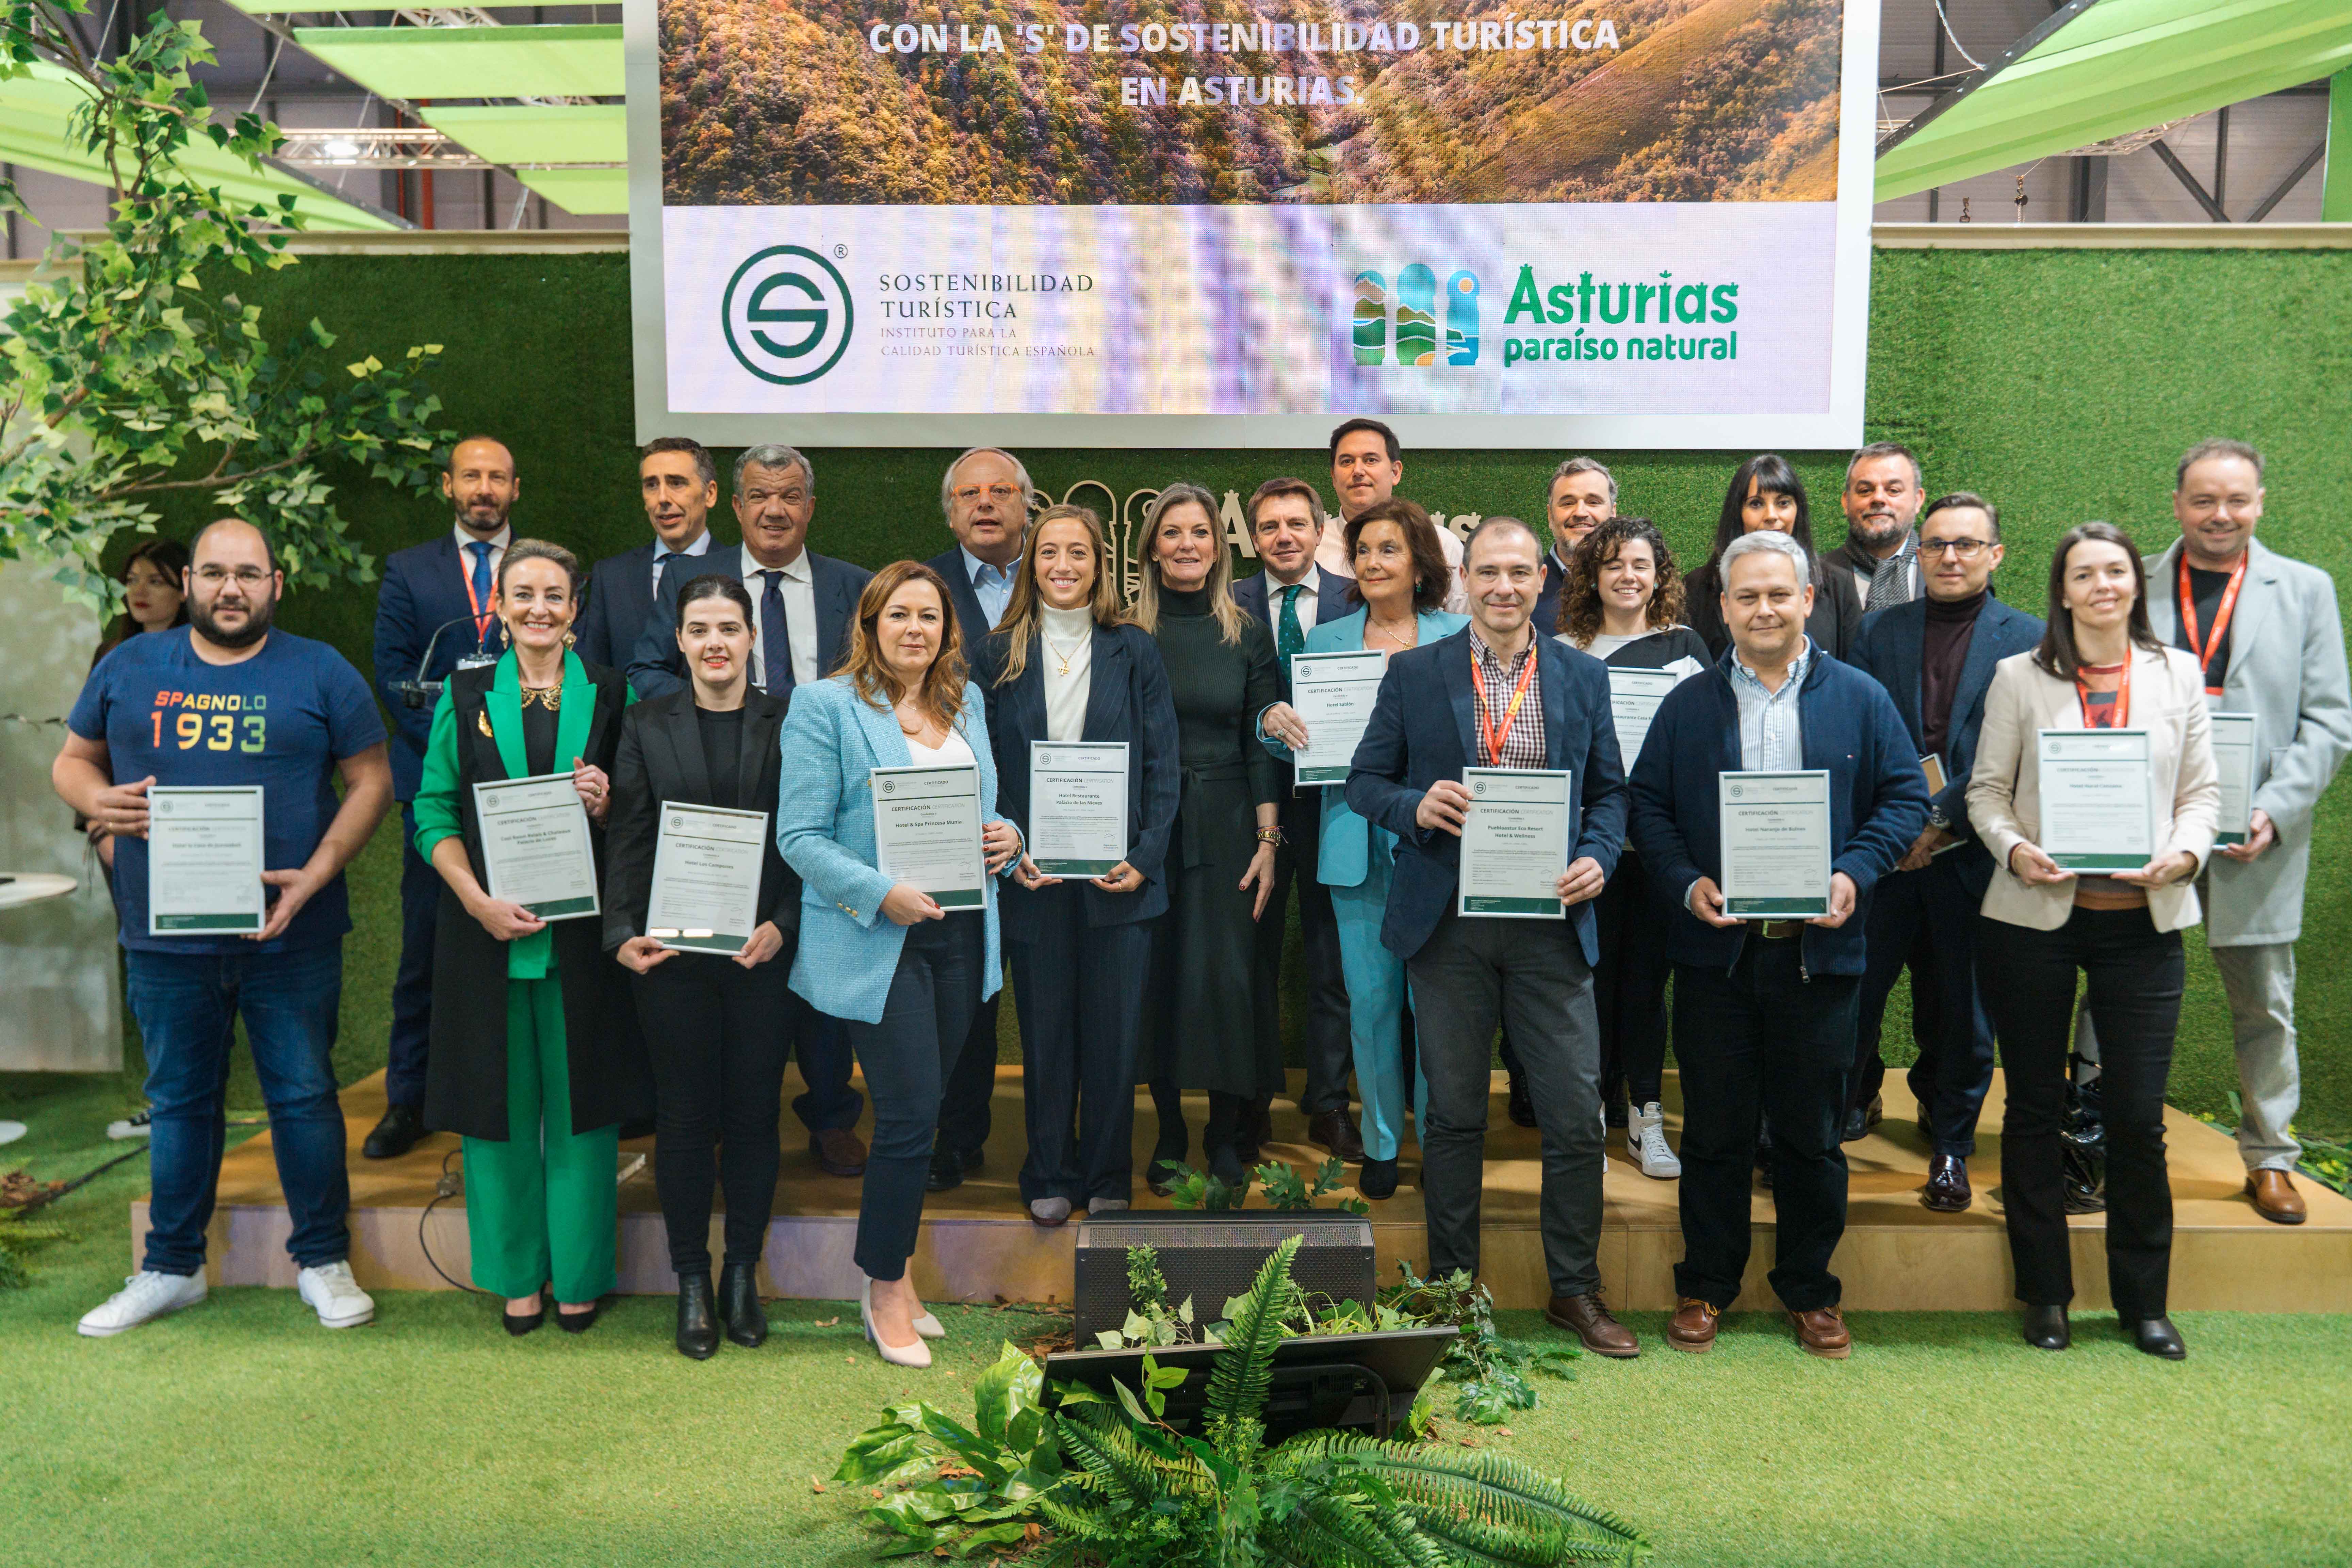 Imagen - Asturias recoge las primeras 20 certificaciones S de Sostenibilidad impulsadas por el Instituto para la Calidad Turística Española